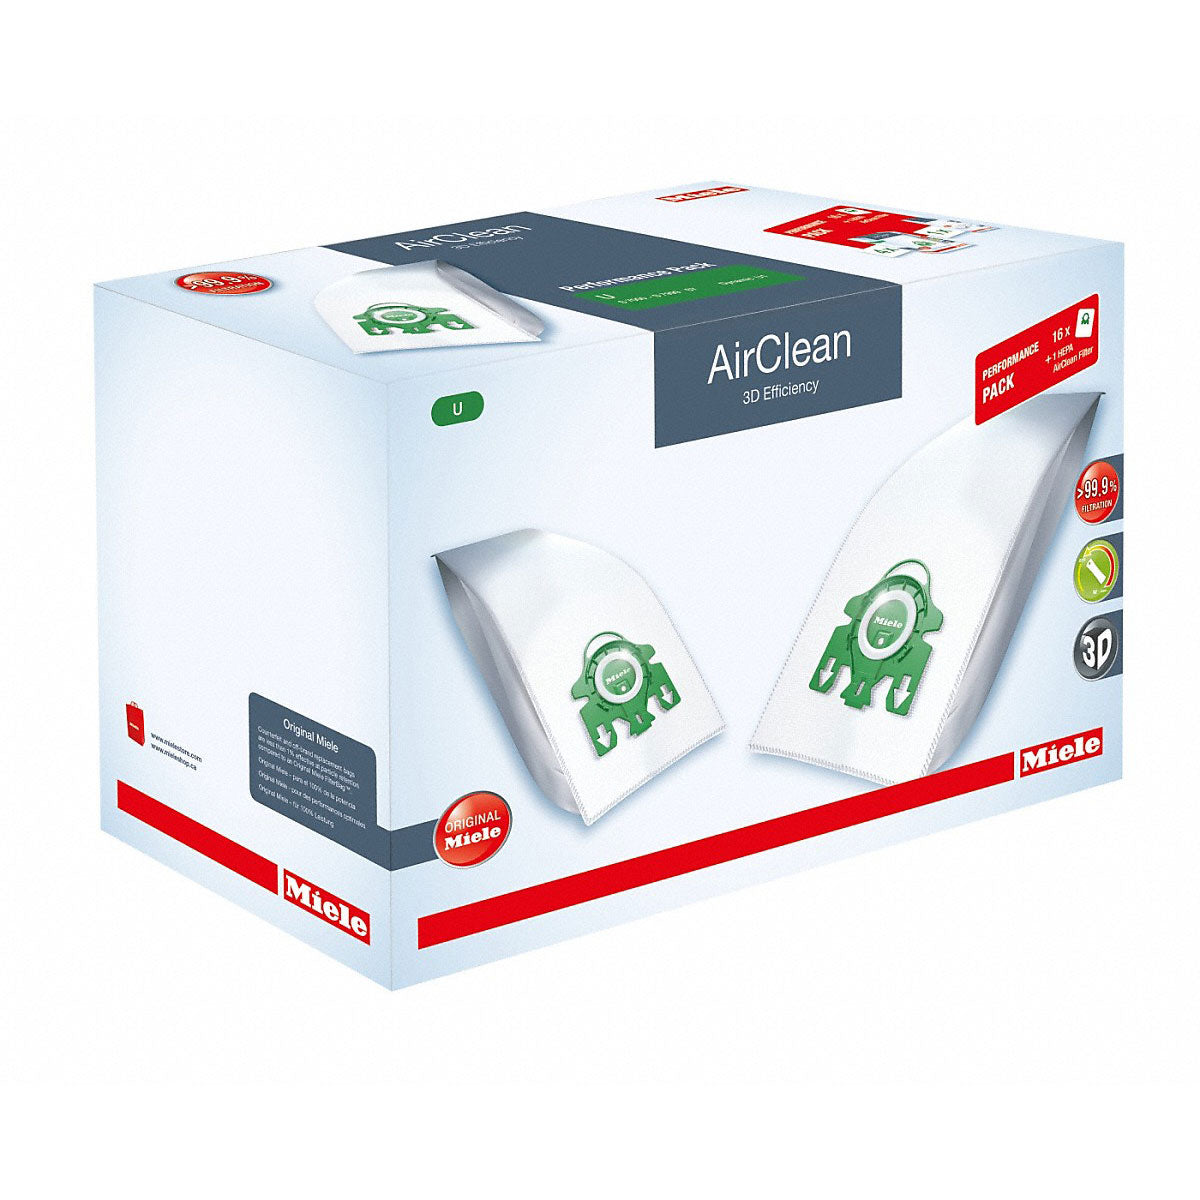 Miele Hyclean 3D Efficiency Dust Bag, Type FJM, 8 Bags & 4 Filters XL Pack  - Helia Beer Co